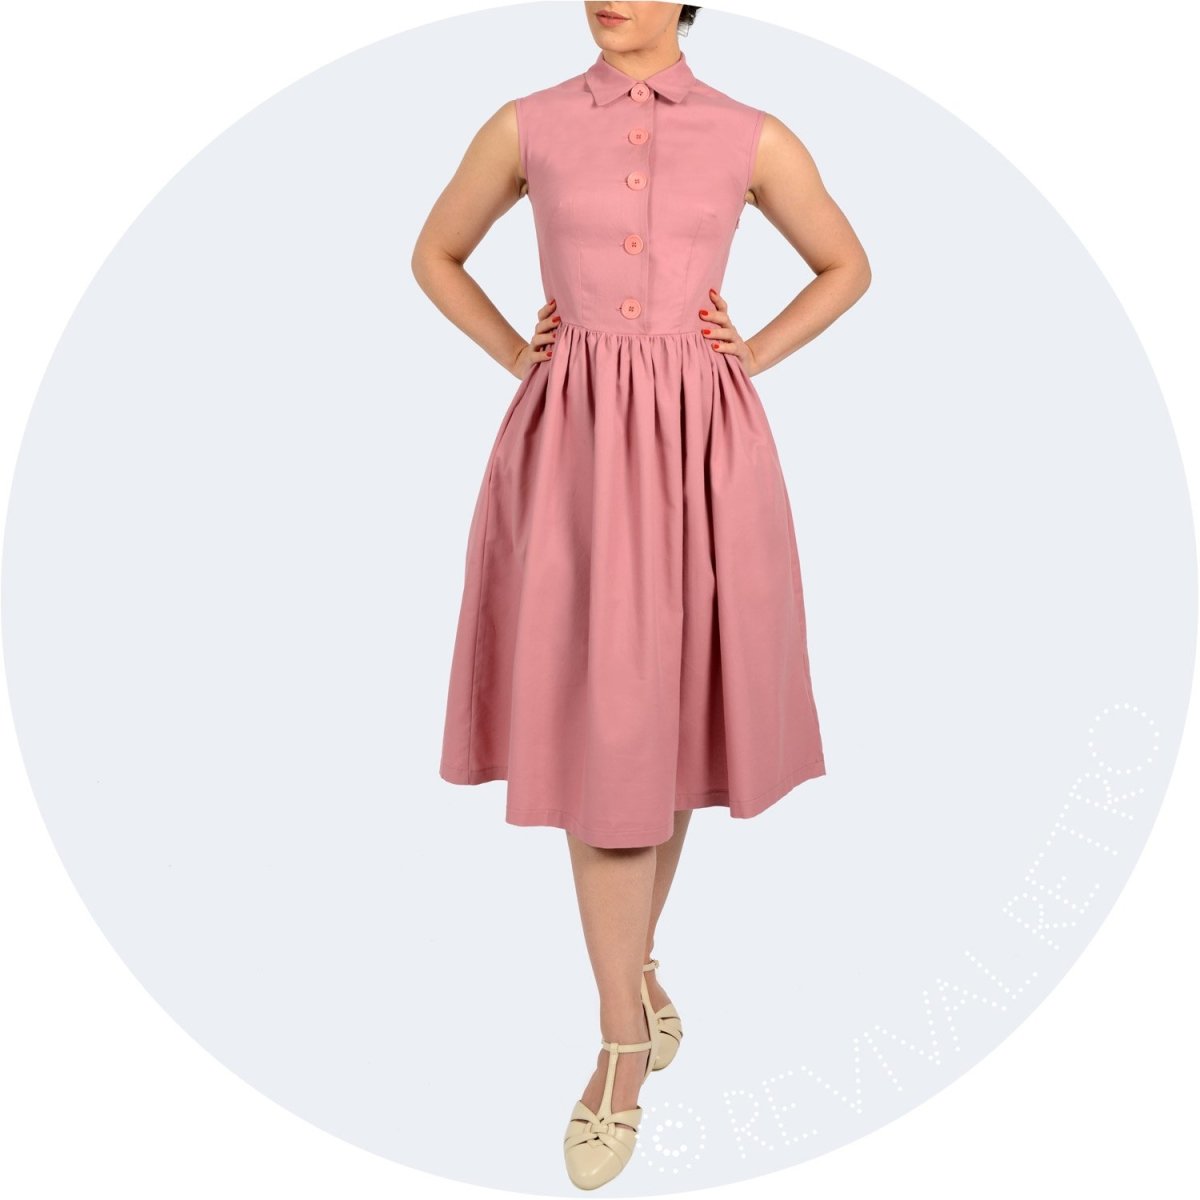 retro dresses 1950s fashion london designer made in britain